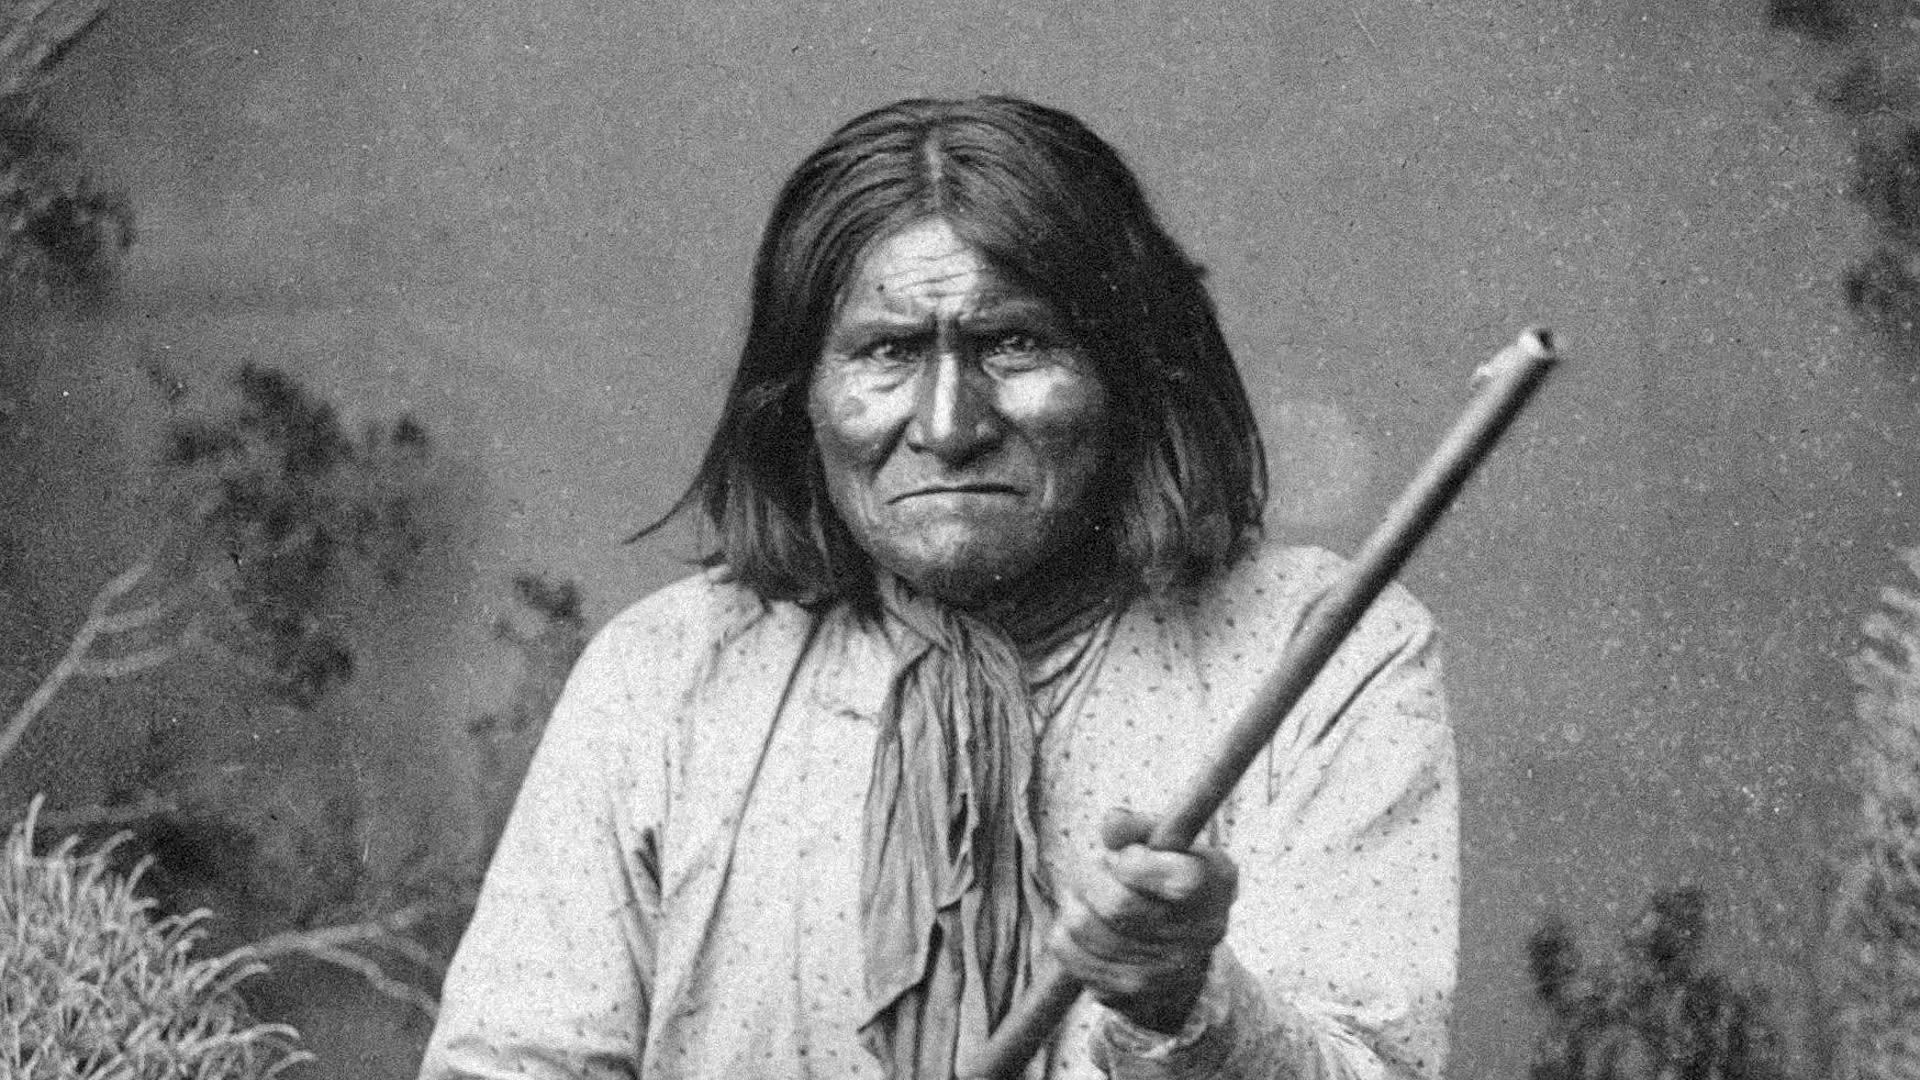 Geronimo - náčelník Apačů